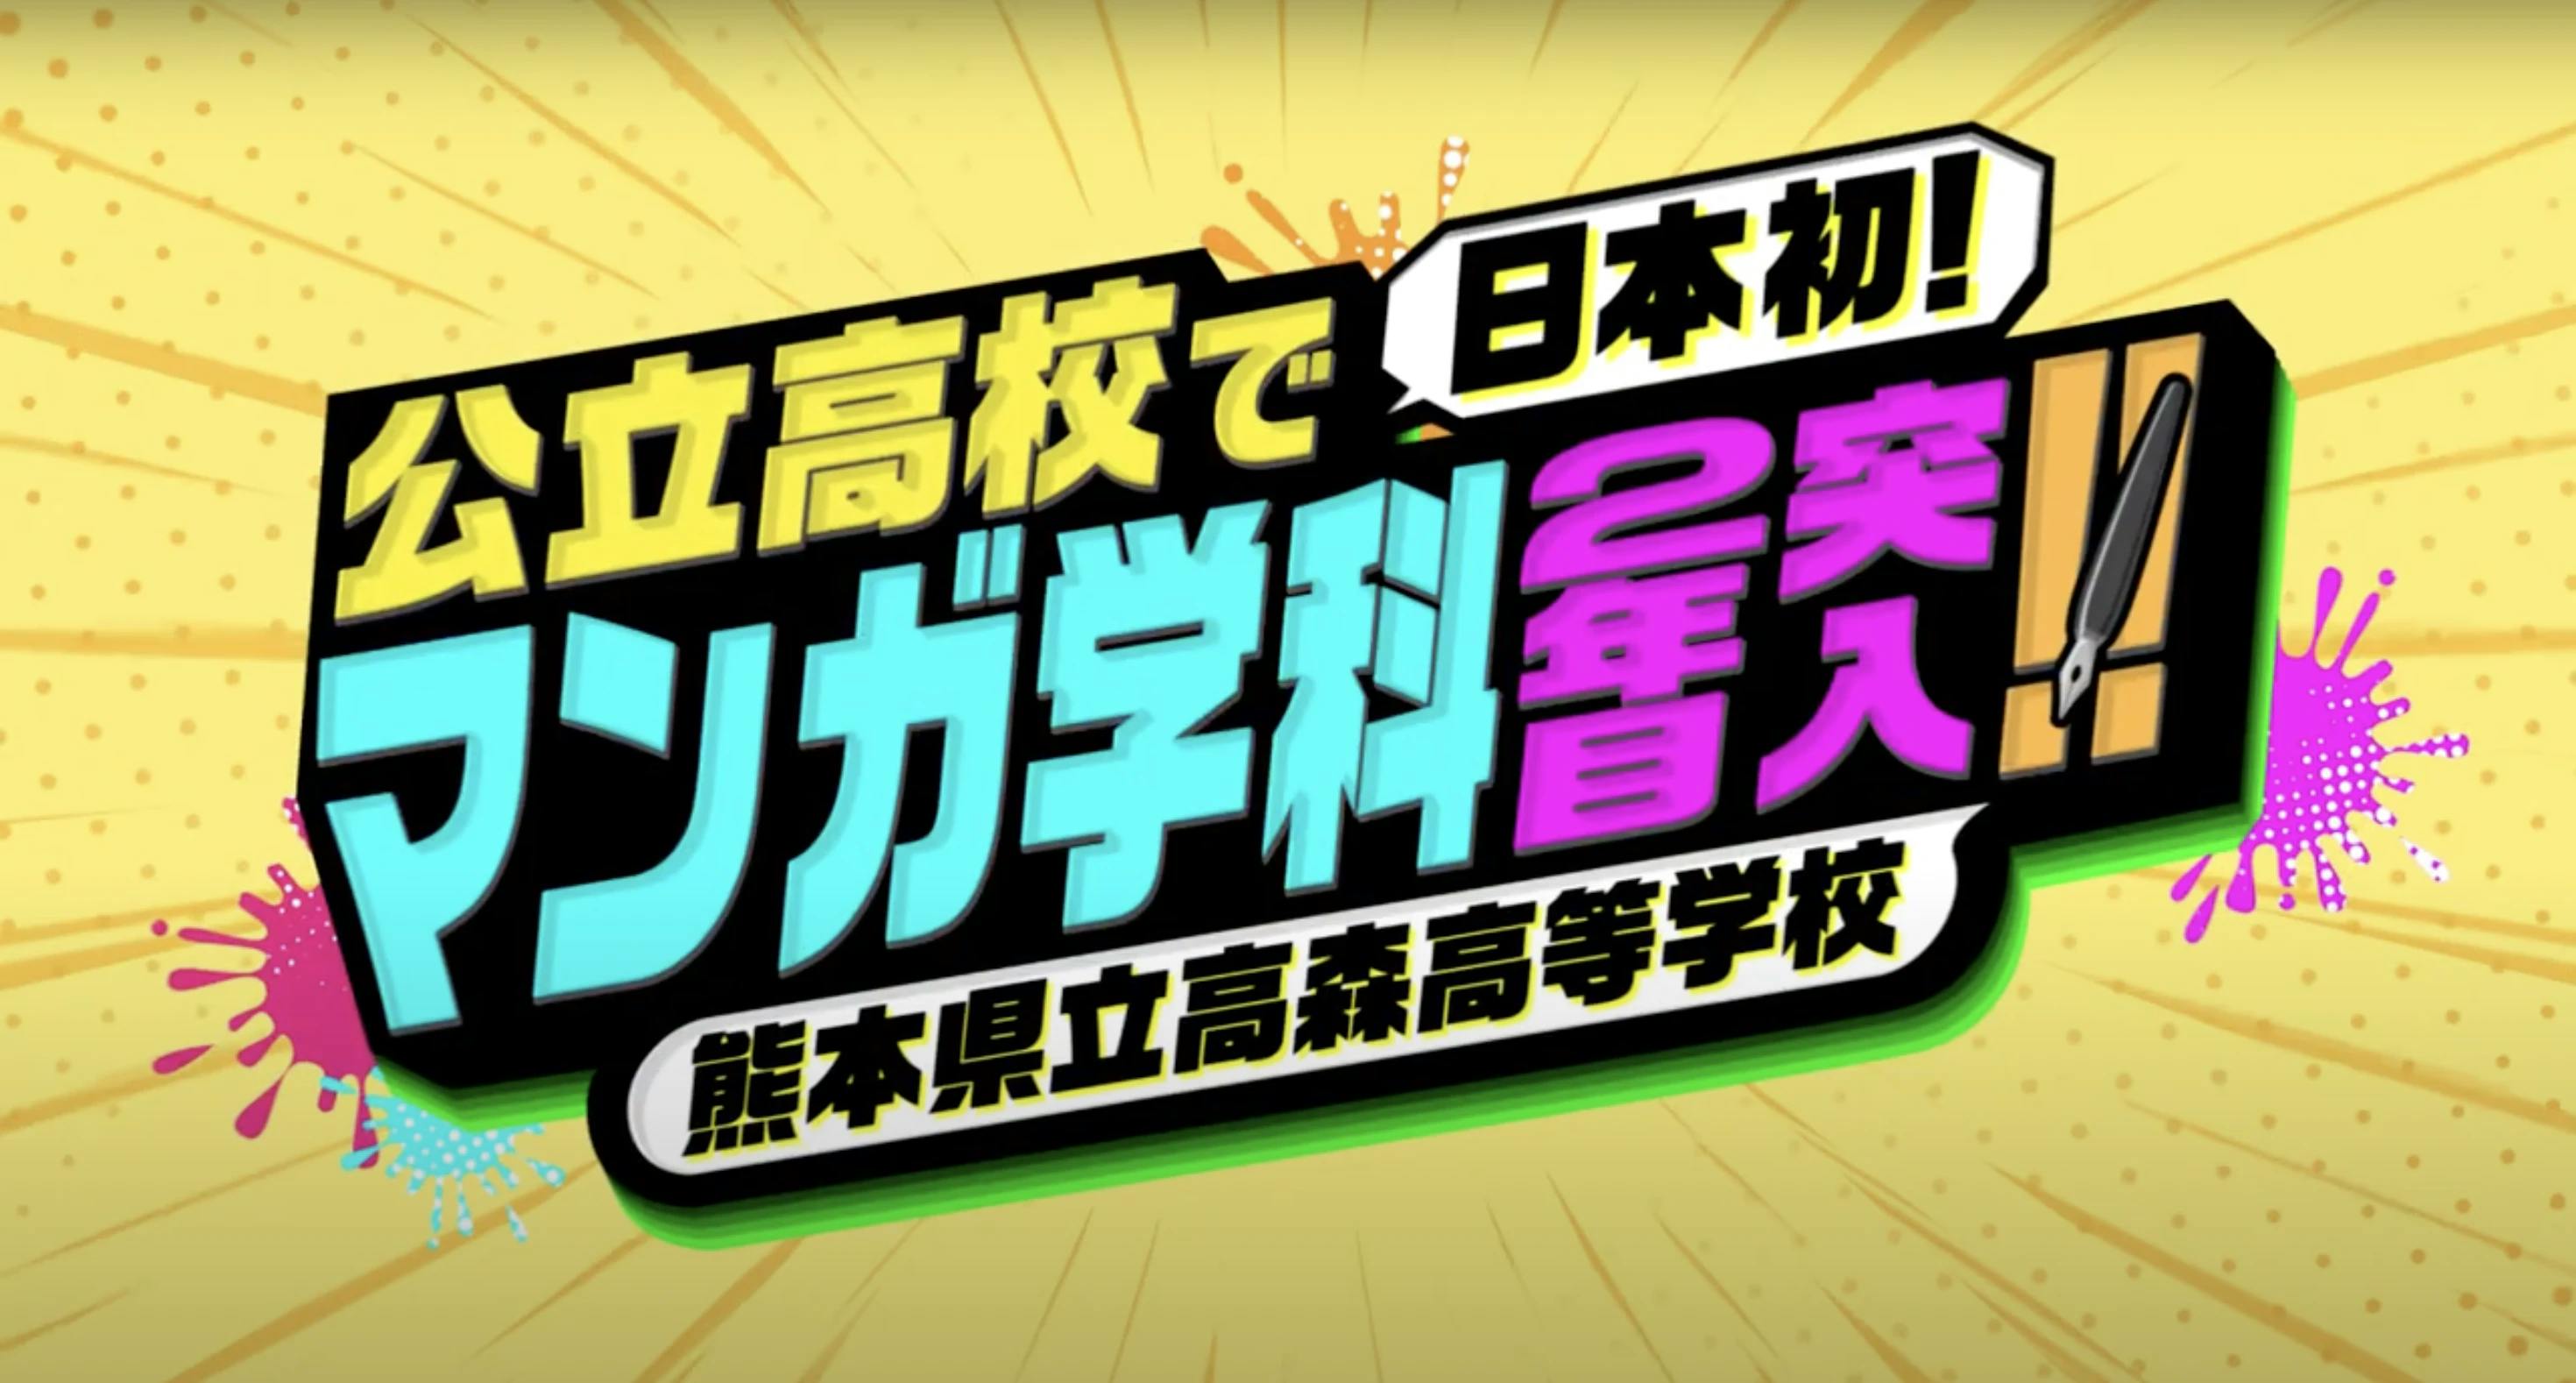 È stato rilasciato un video introduttivo per il dipartimento di manga della Takamori High School!